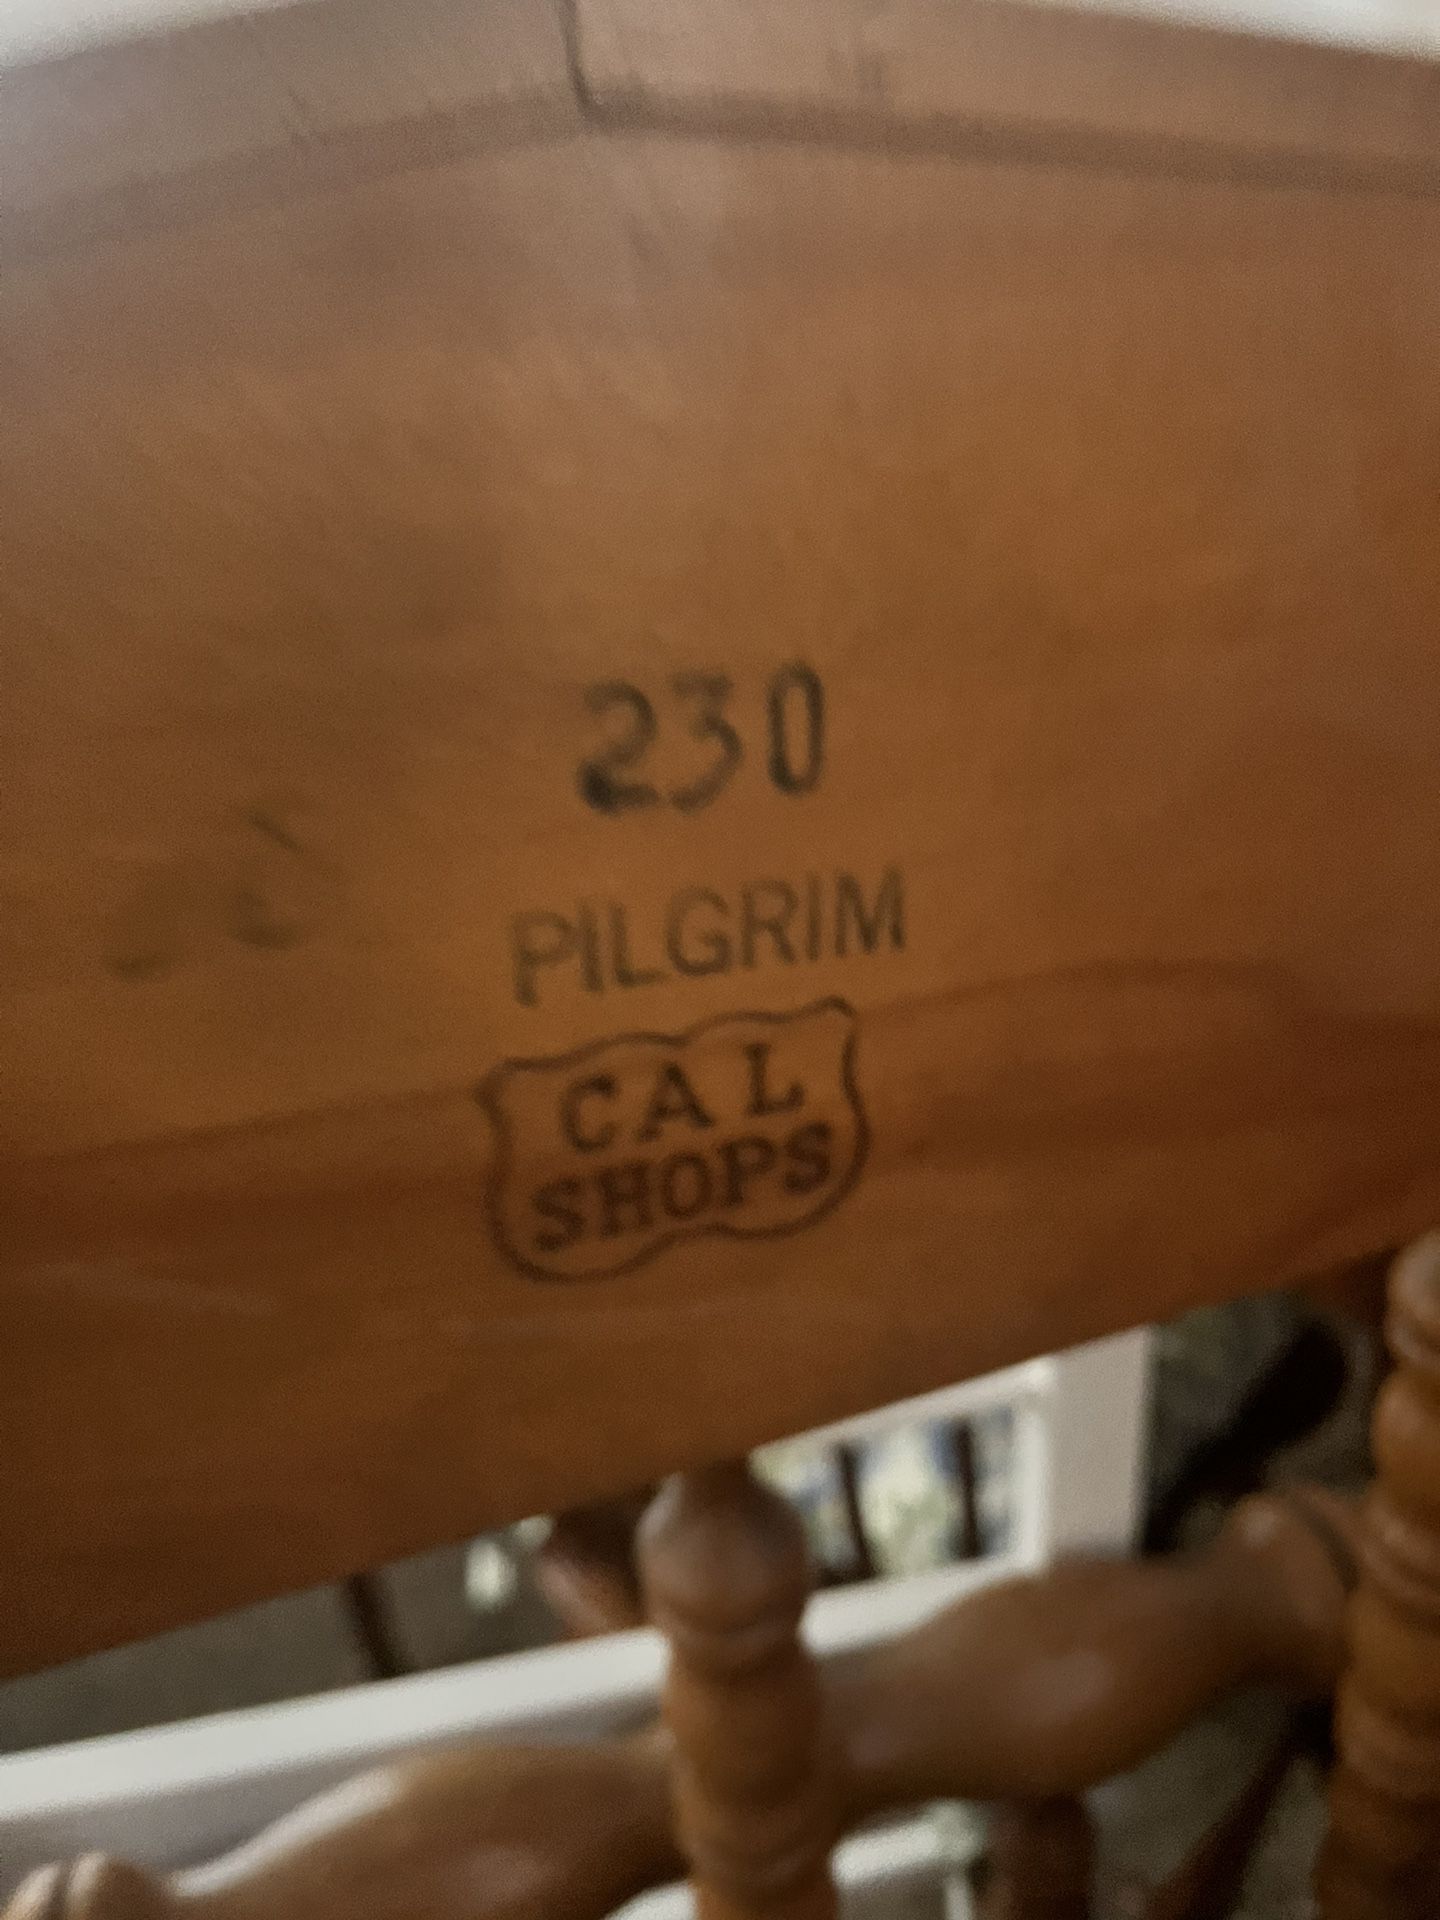 Pilgrim Twin Beds $300